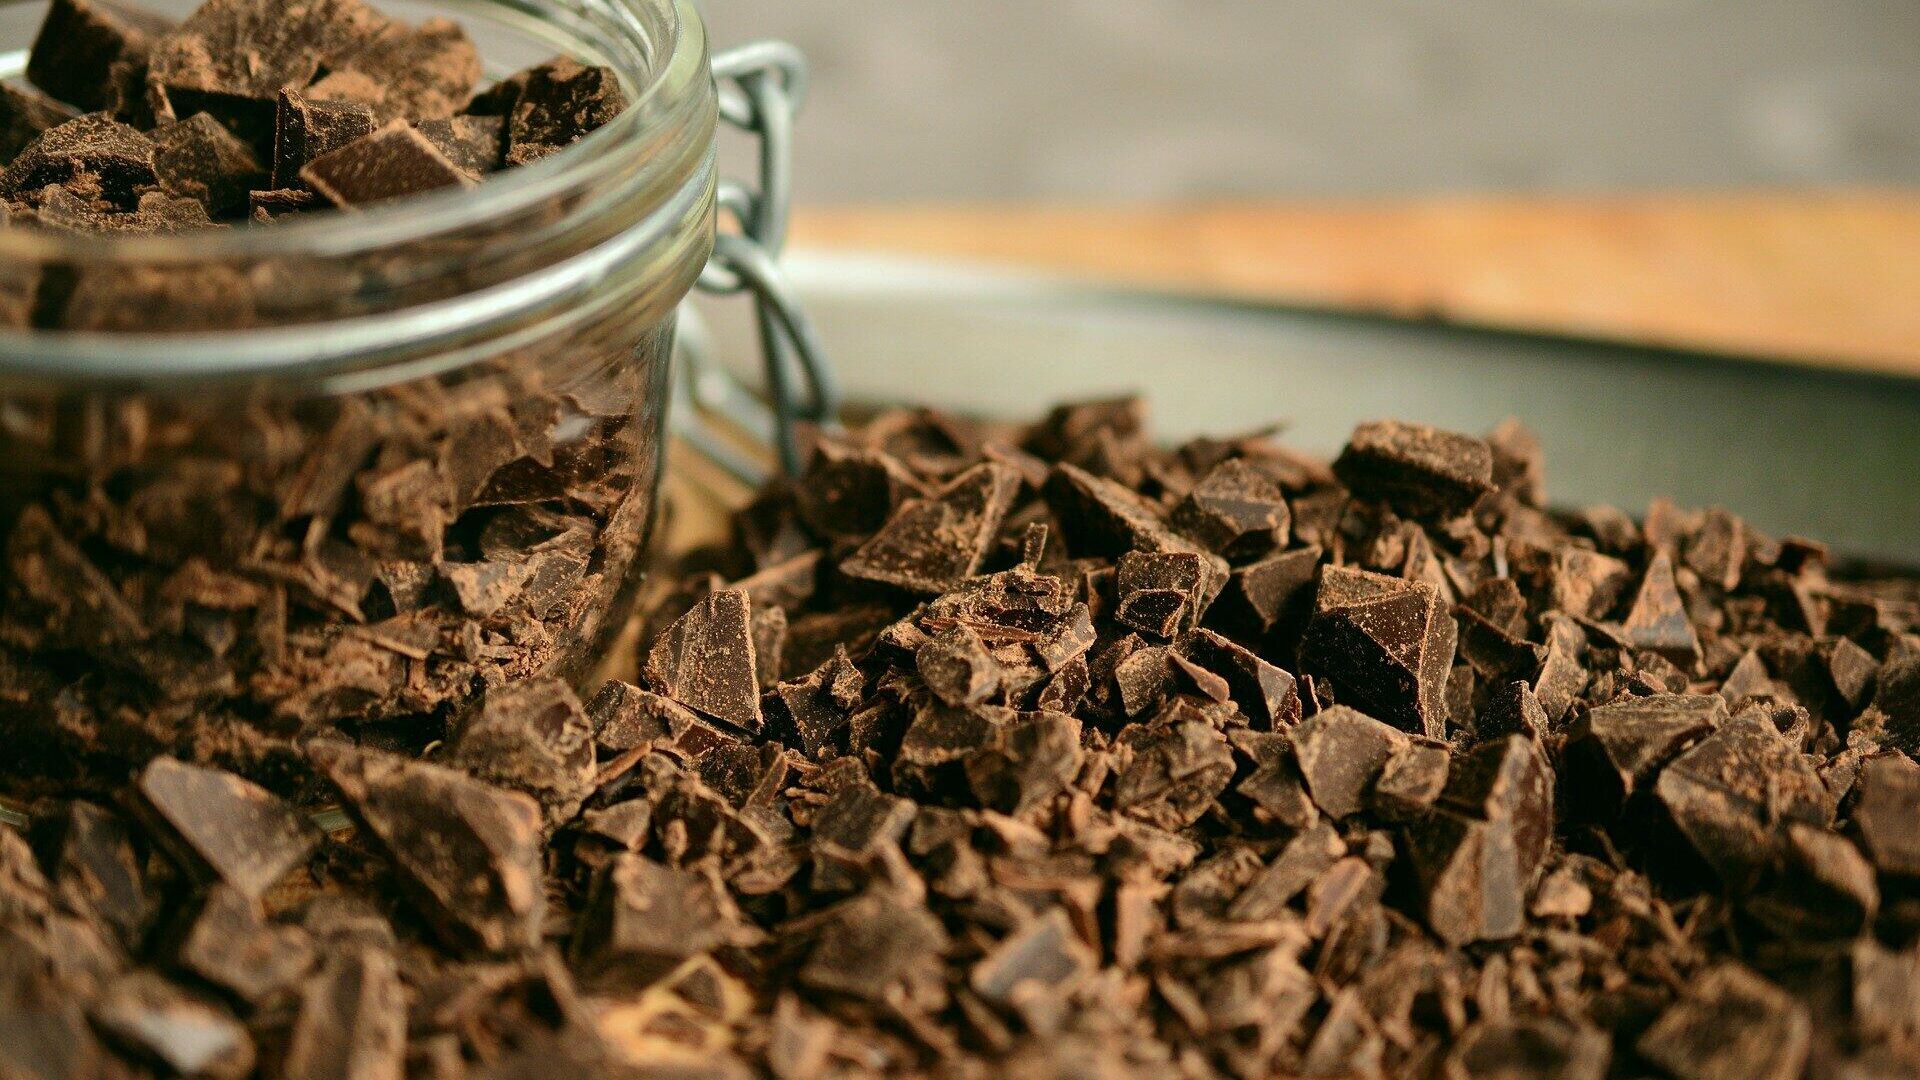 Эксперты рассказали, как шоколад помогает снять стресс